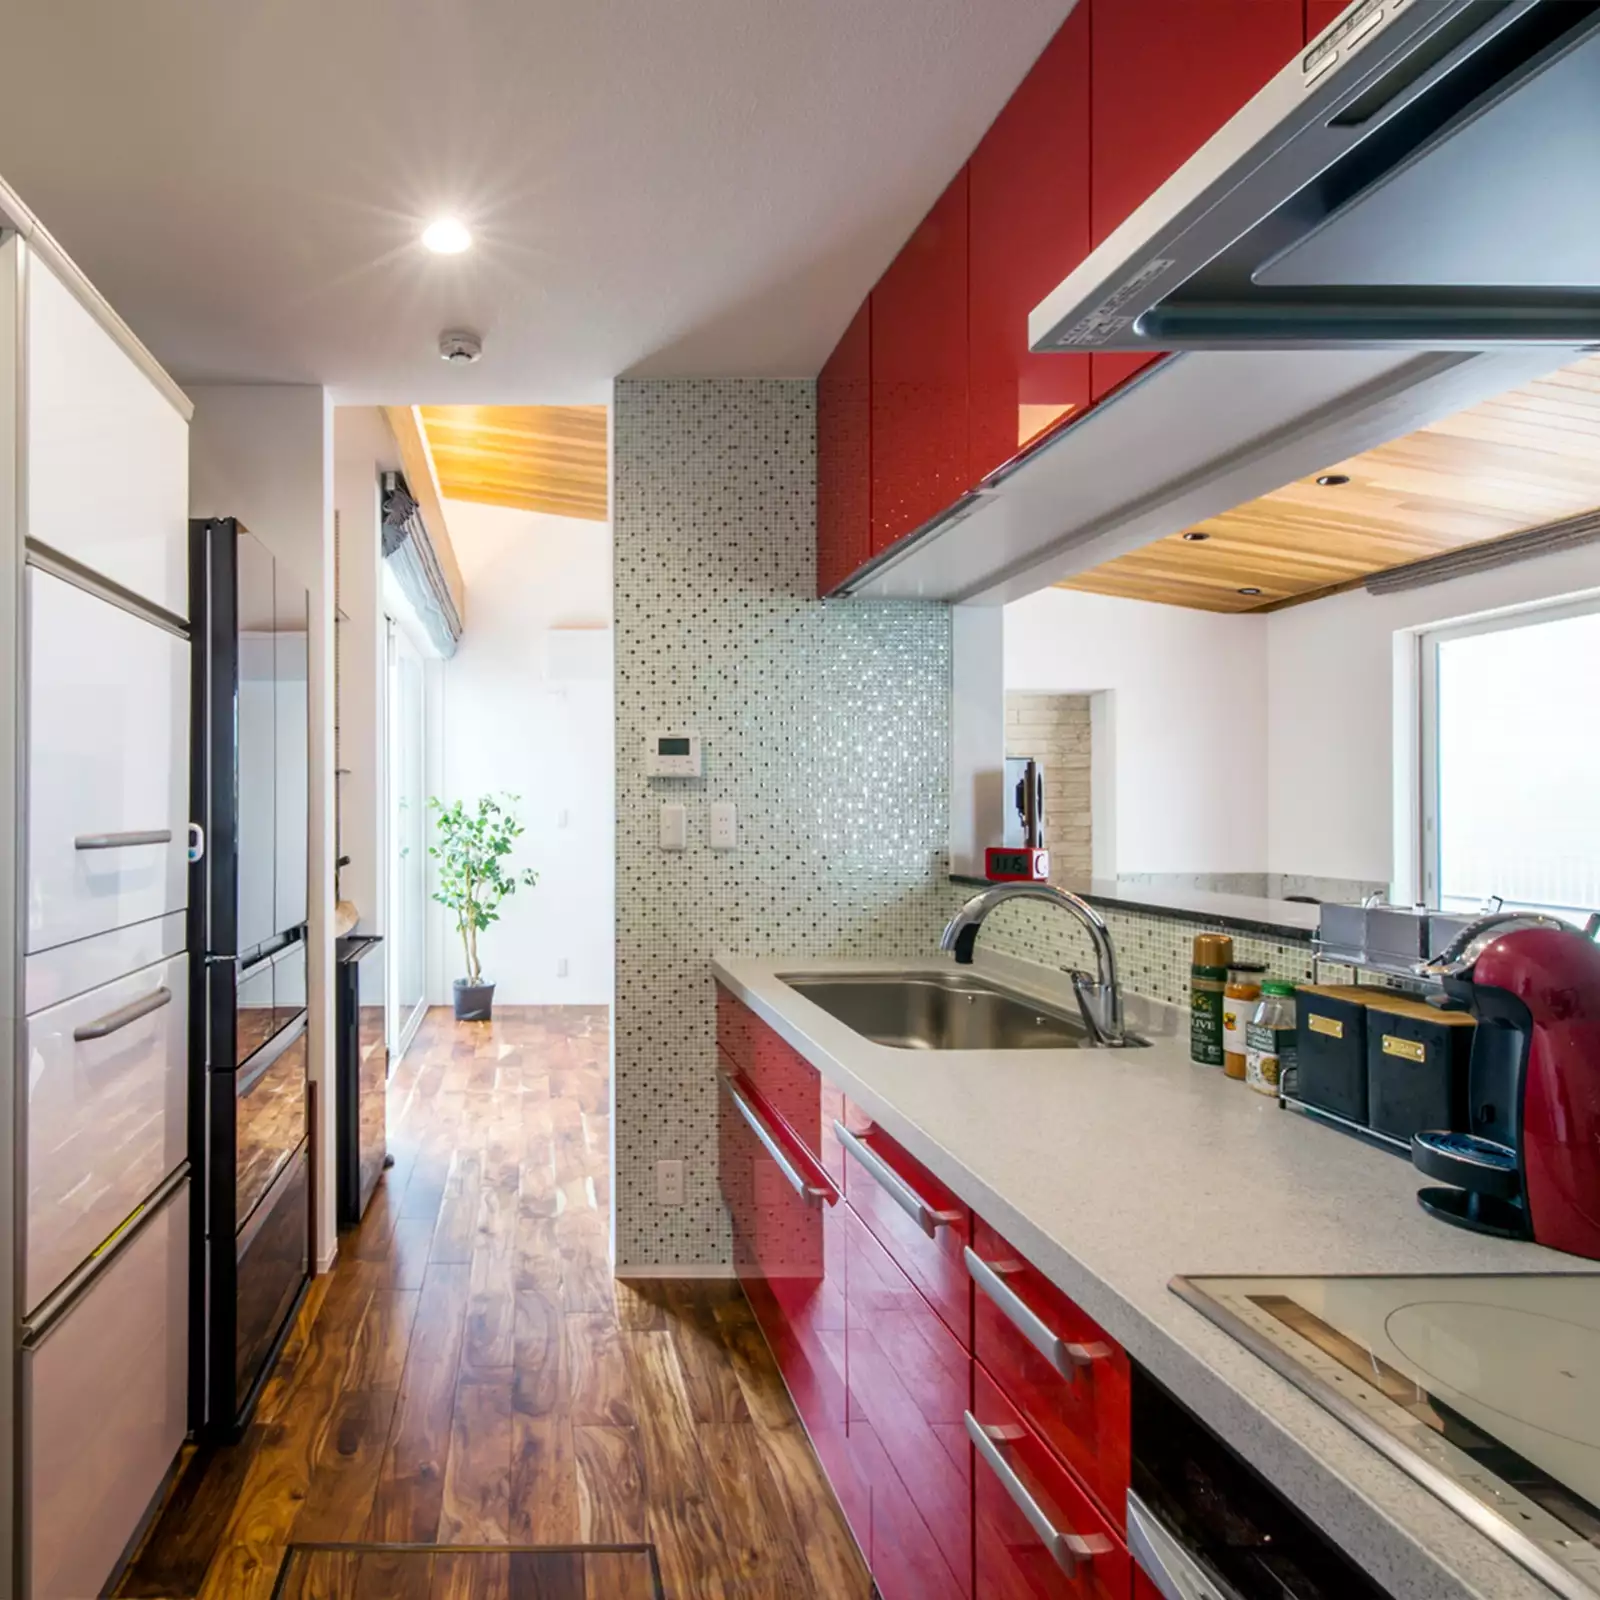 R+houseの物件のキッチンの写真。赤いキッチンが目を引く。流しの向かいはダイニングとつながる窓がある。